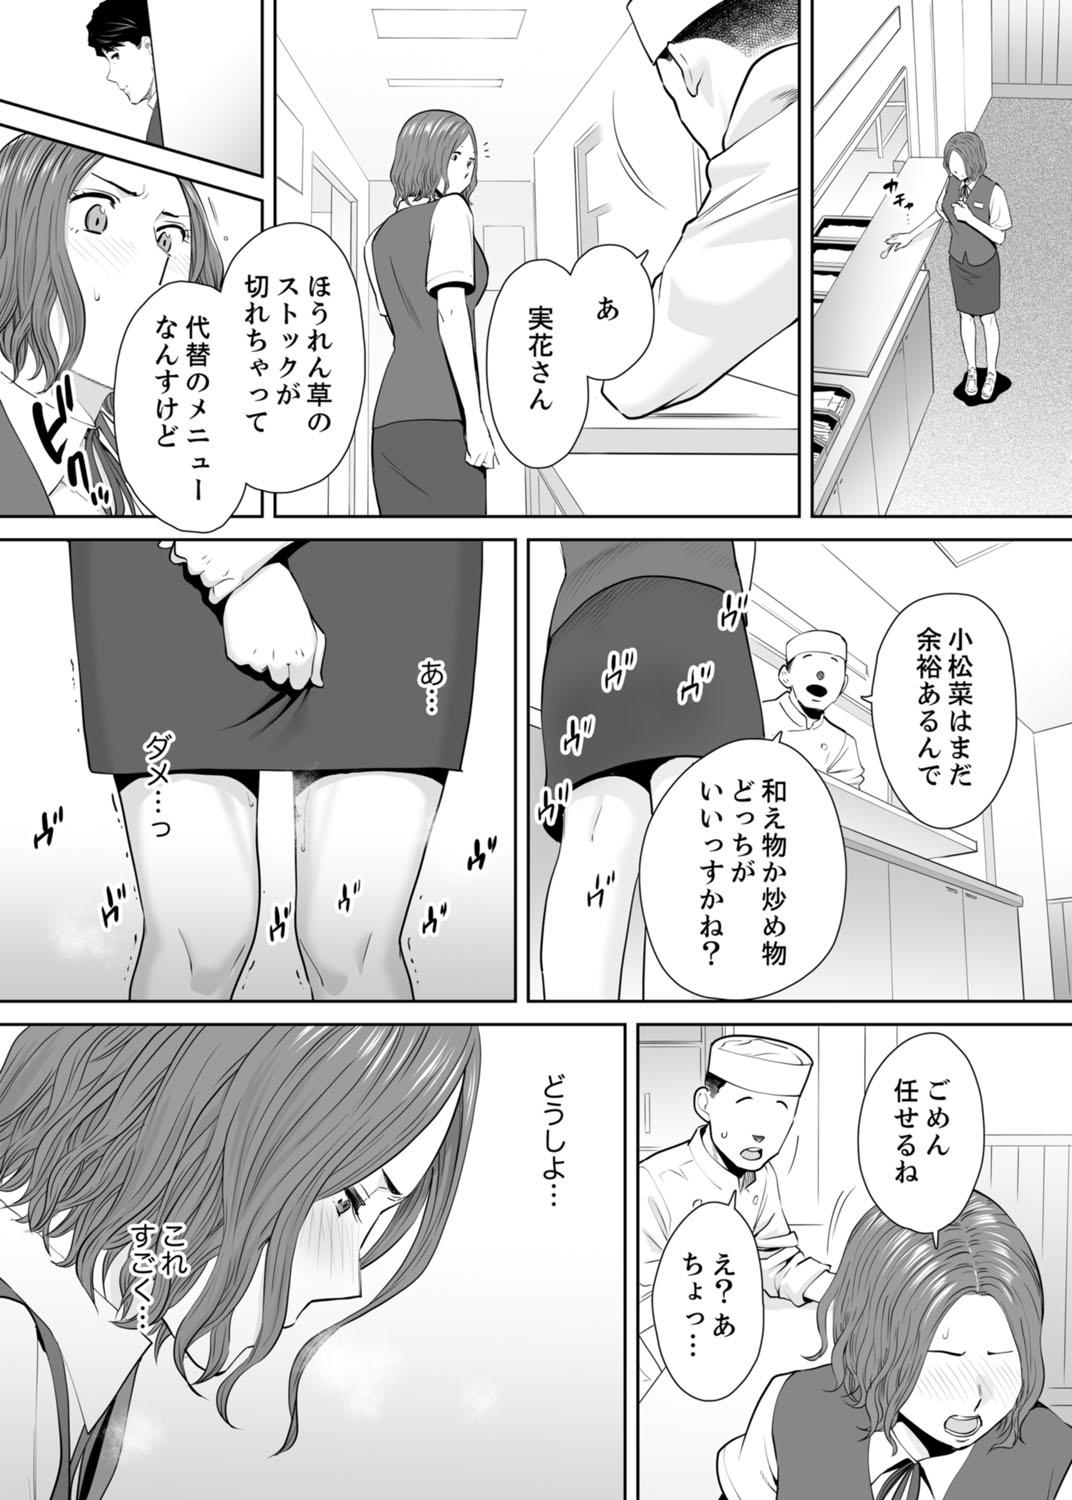 Bathroom "Otto no Buka ni Ikasarechau..." Aragaezu Kanjite Shimau Furinzuma 11 Barely 18 Porn - Page 13